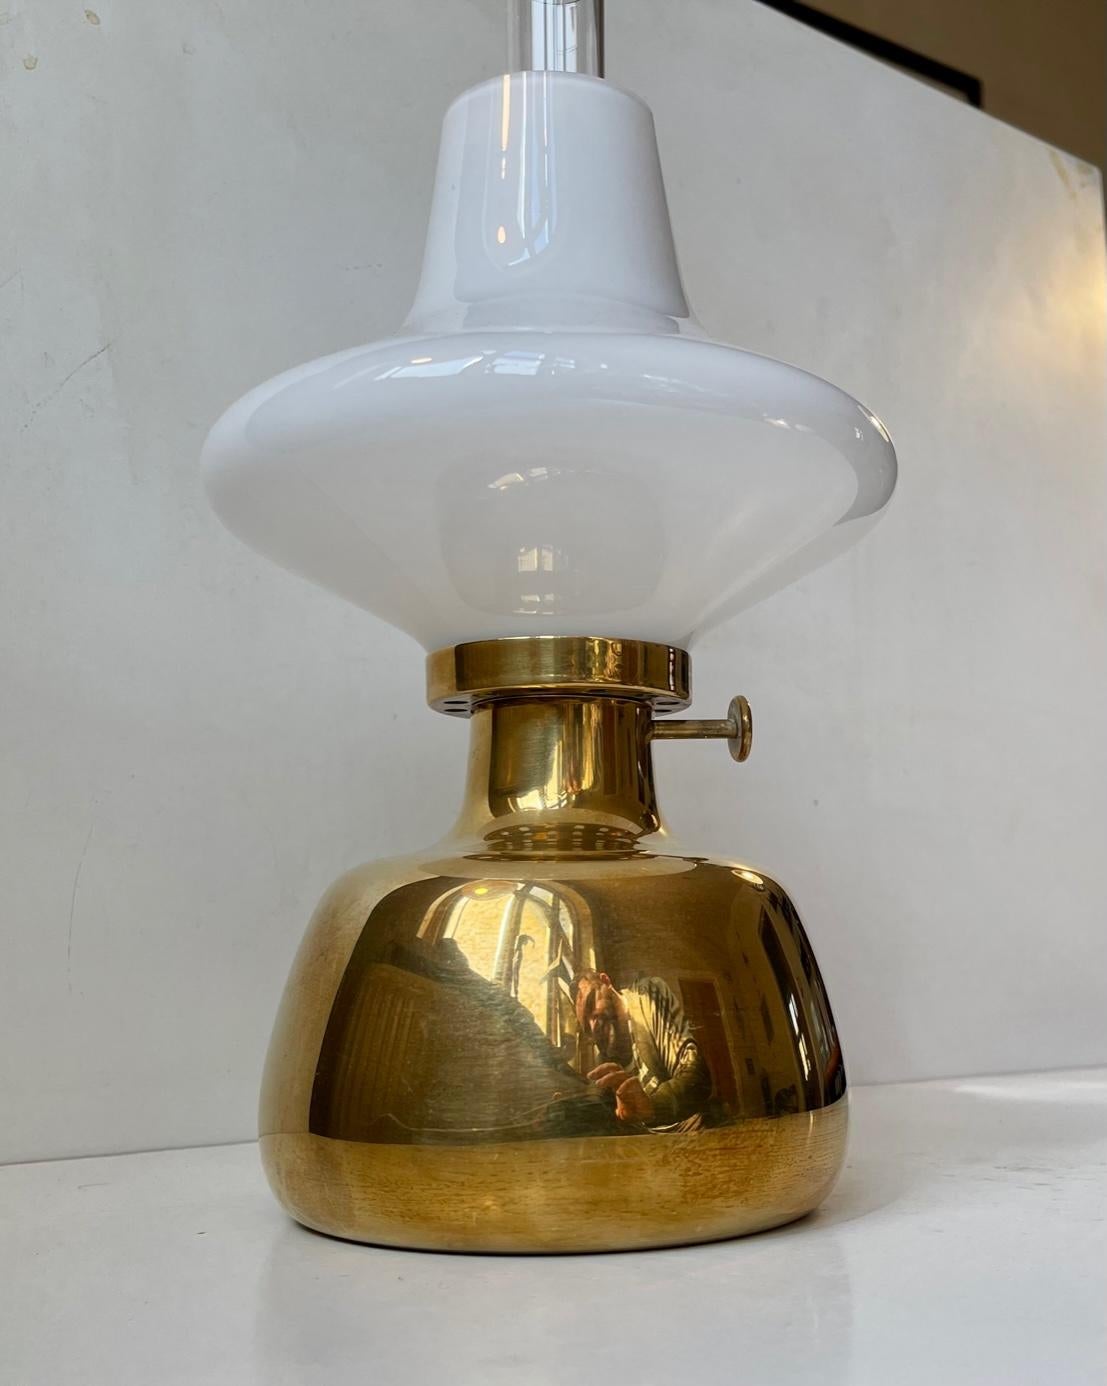 Conçue par Henning Koppel (1918-81) et fabriquée par Louis Poulsen dans les années 1980, la lampe à huile Petronella est fabriquée en laiton massif et possède un abat-jour en verre opalin. En raison de la composition de son matériau, il convient